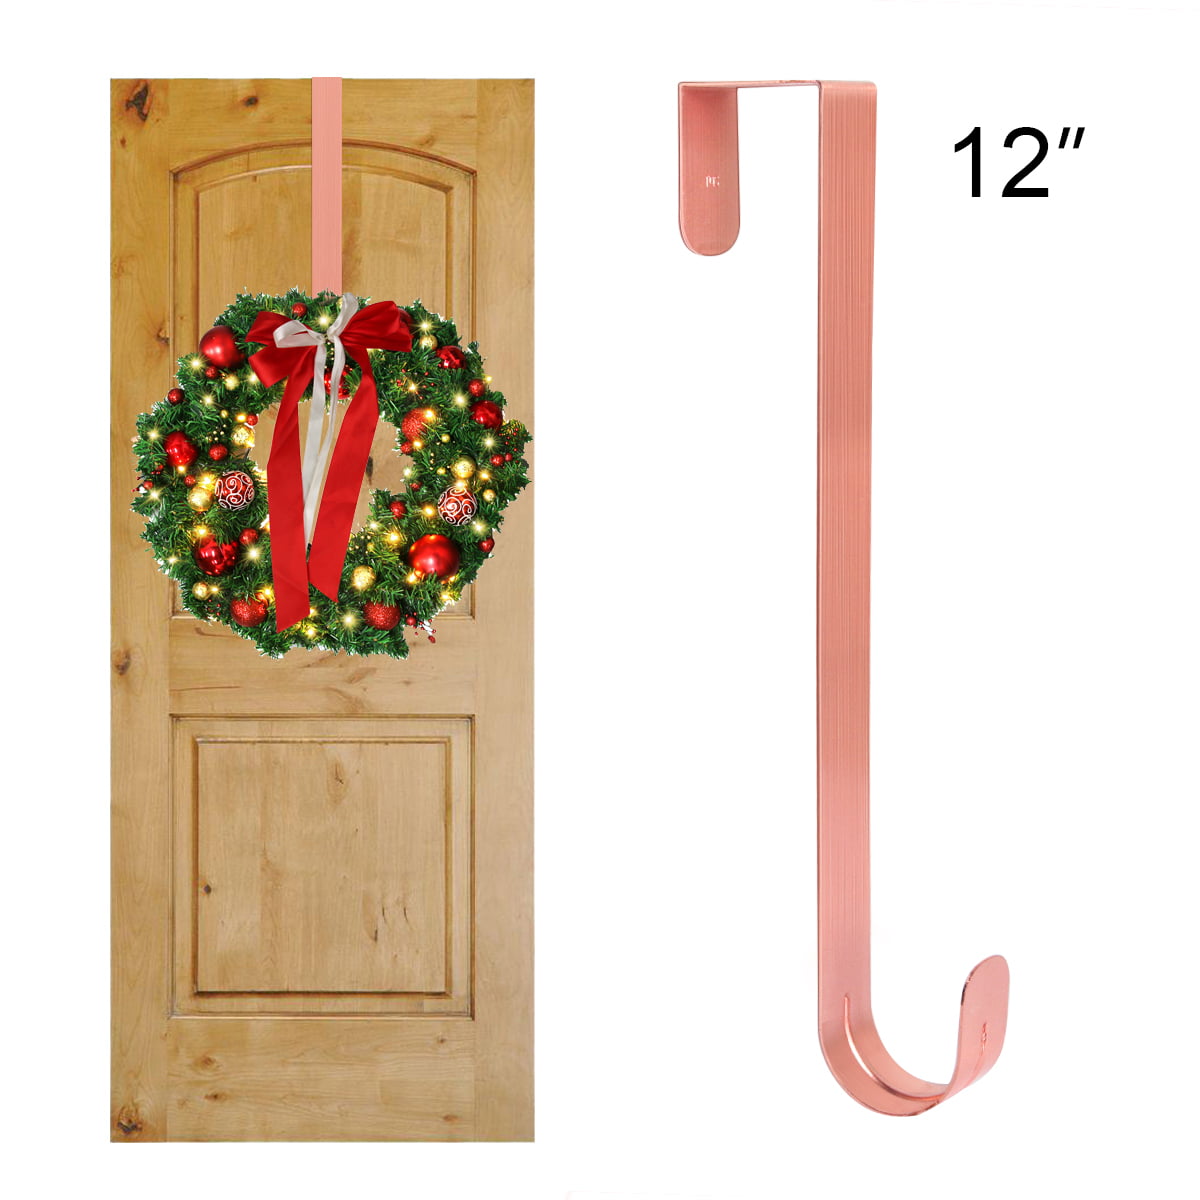 Over The Door Wreath Holder 18" Brown Metal Hook Clothes Hanger Towel Bag Decor 